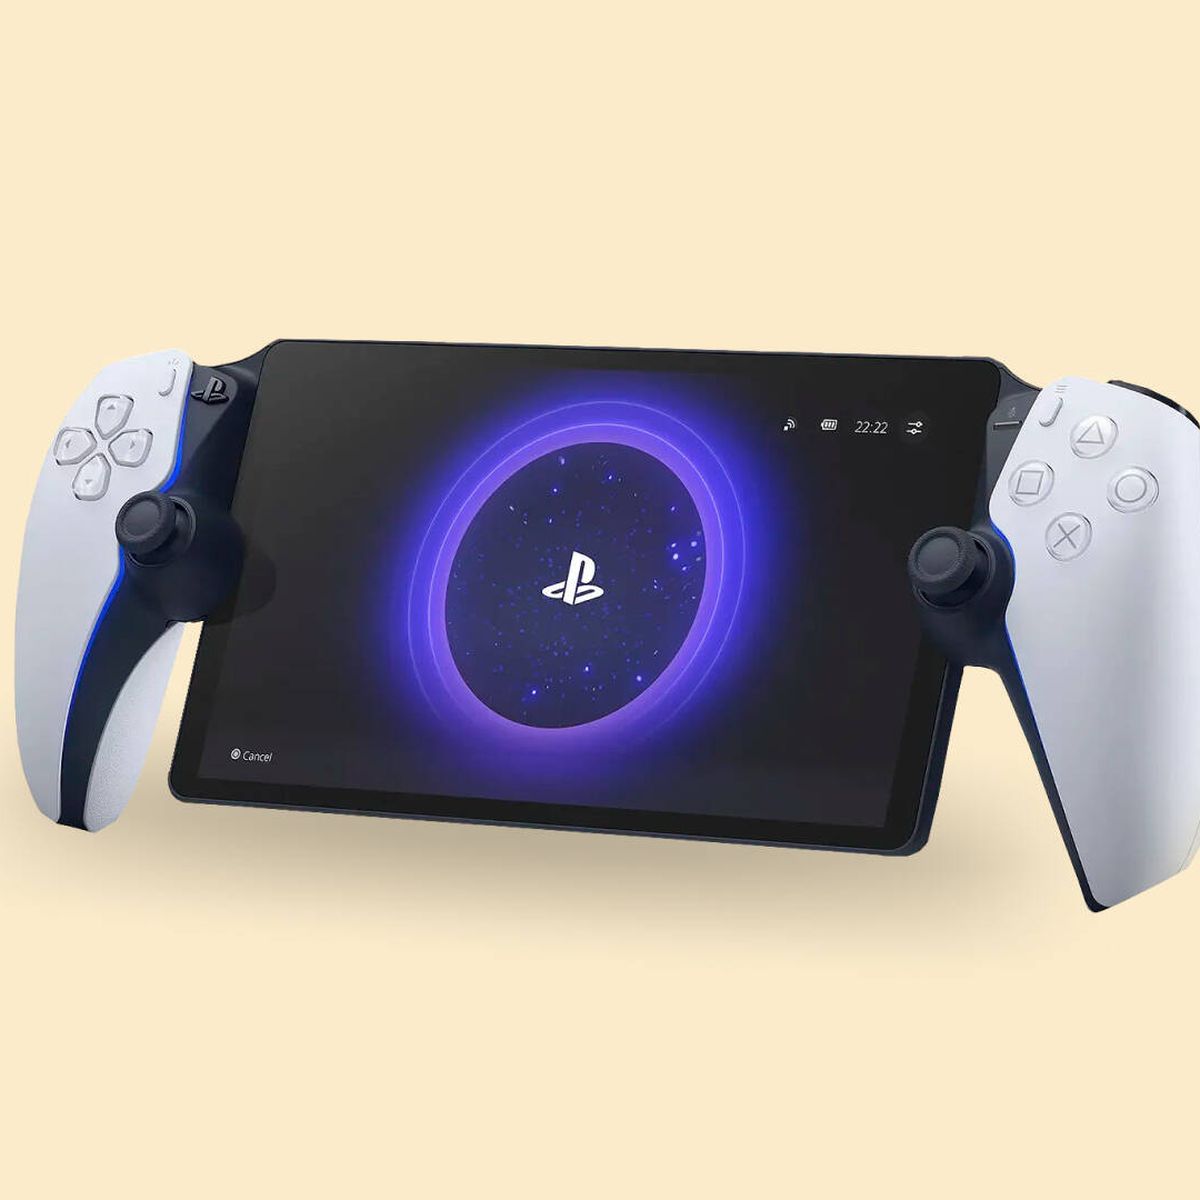 Qué es PlayStation Portal? Sony detalla todo sobre su nueva consola portátil